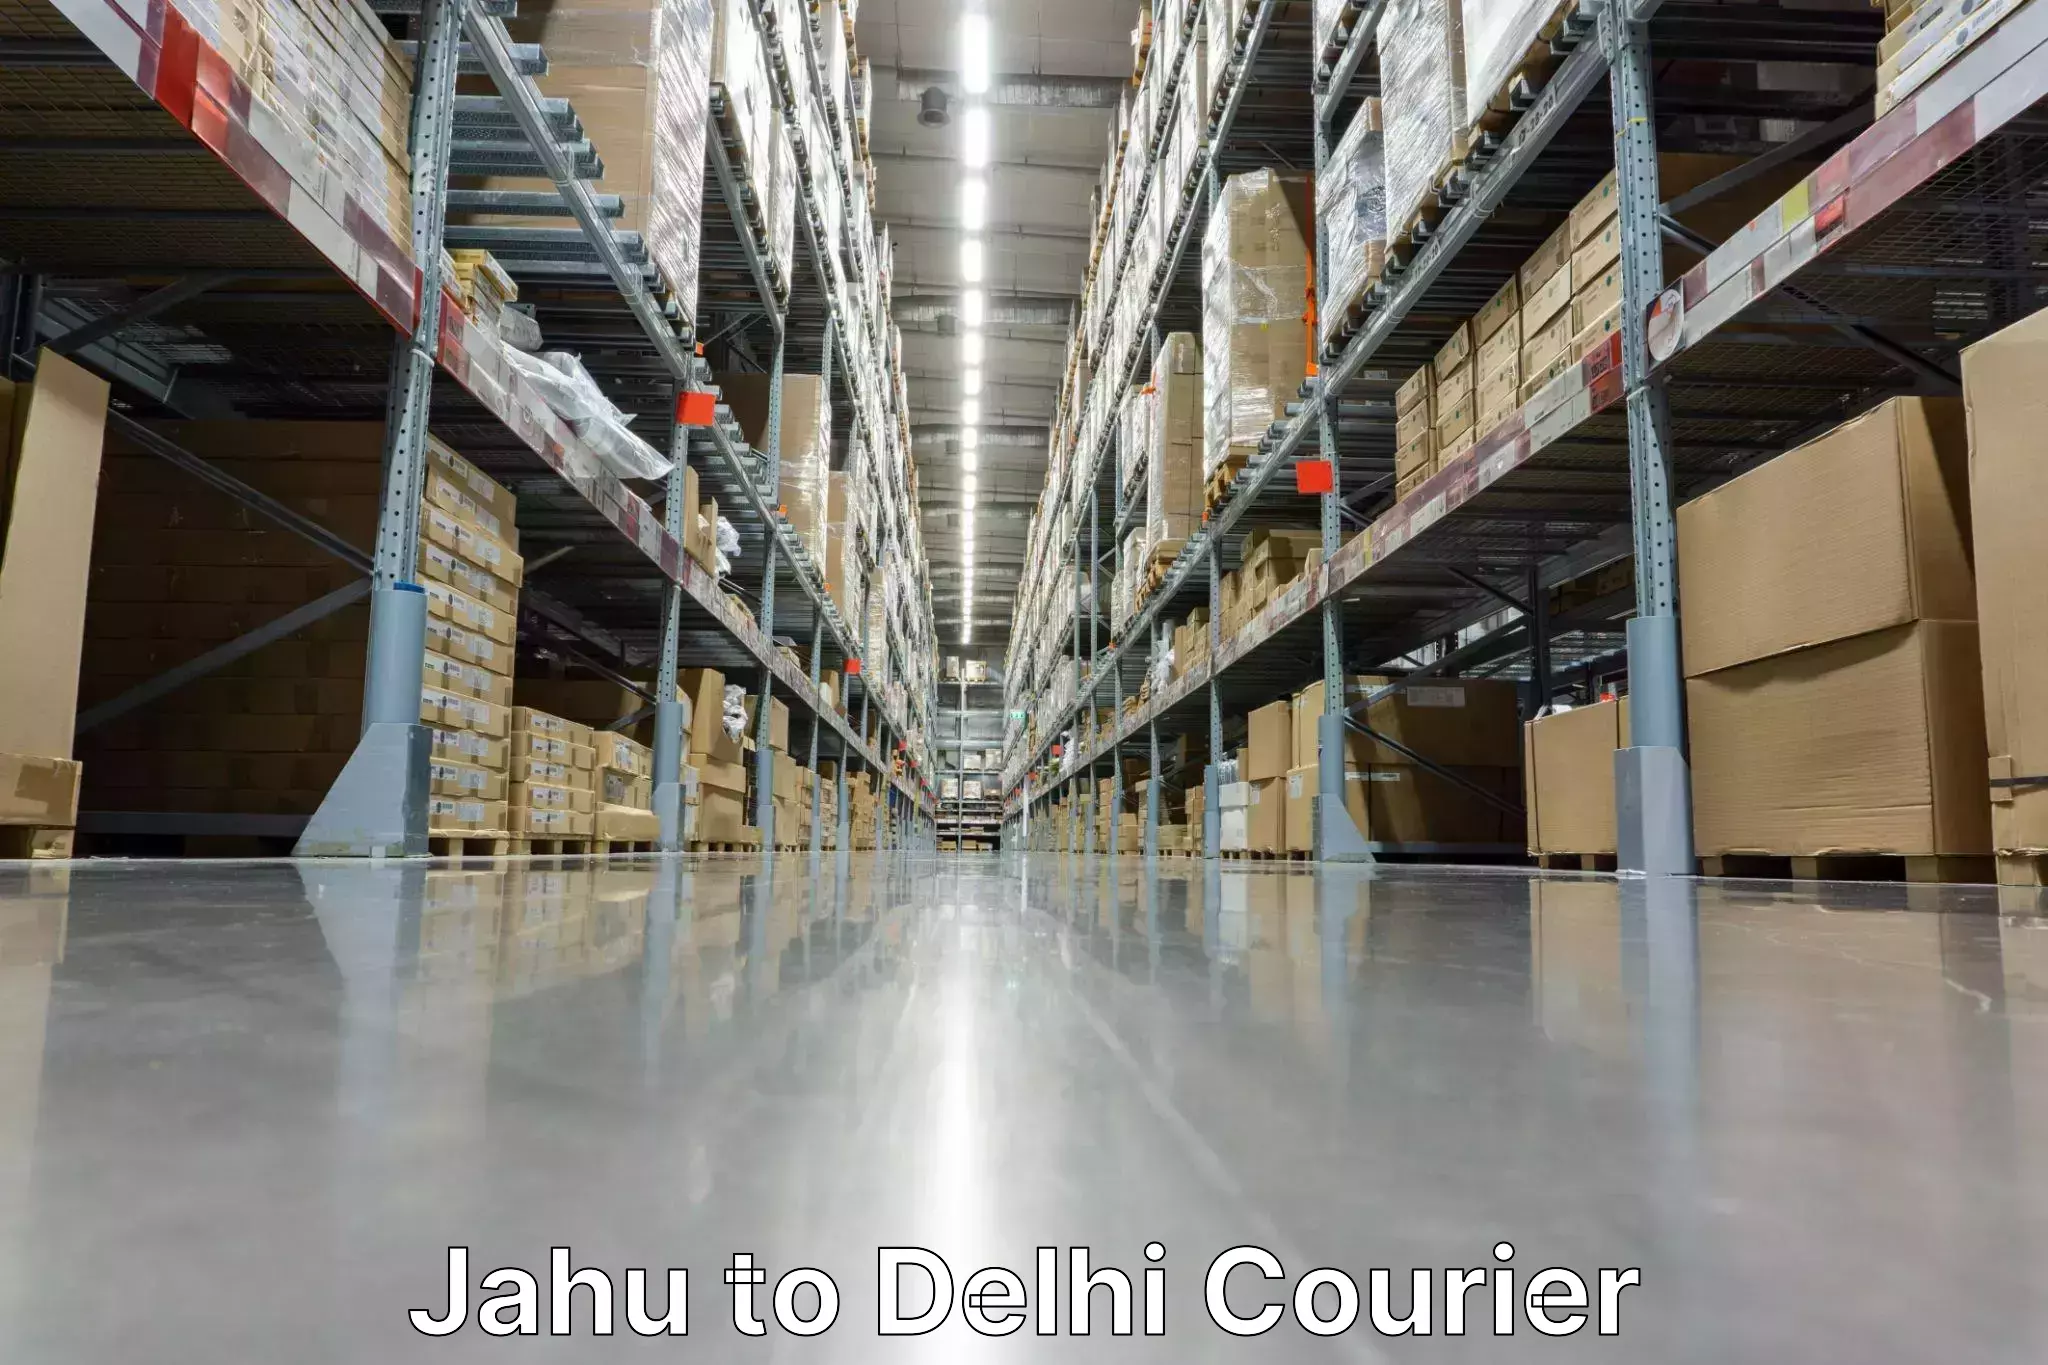 Next-day freight services in Jahu to Jamia Millia Islamia New Delhi